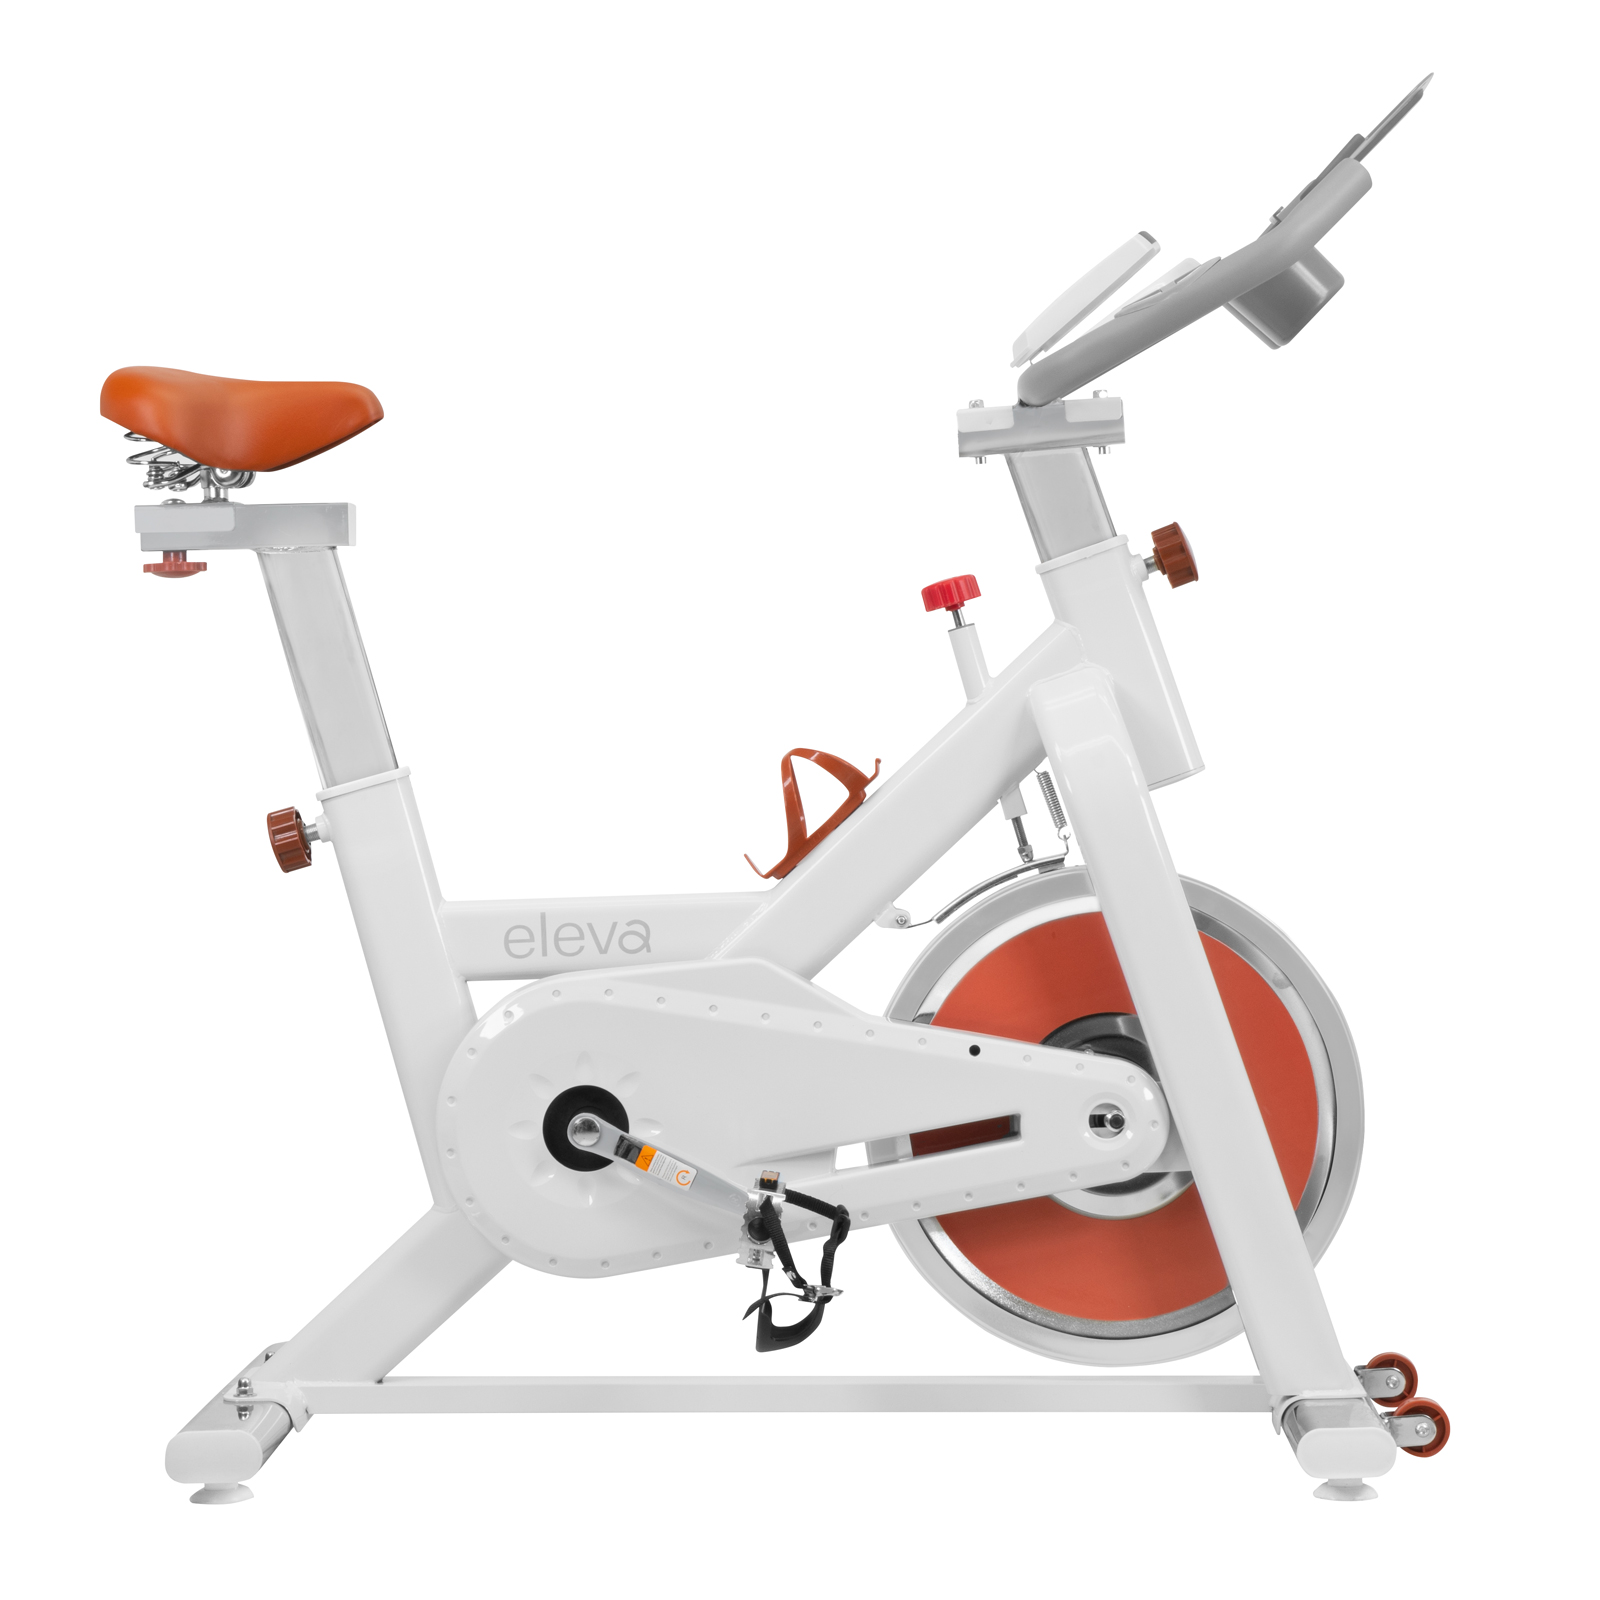 eleva Bicicleta Spinning Resistencia Magnetica Ejercicio Gym